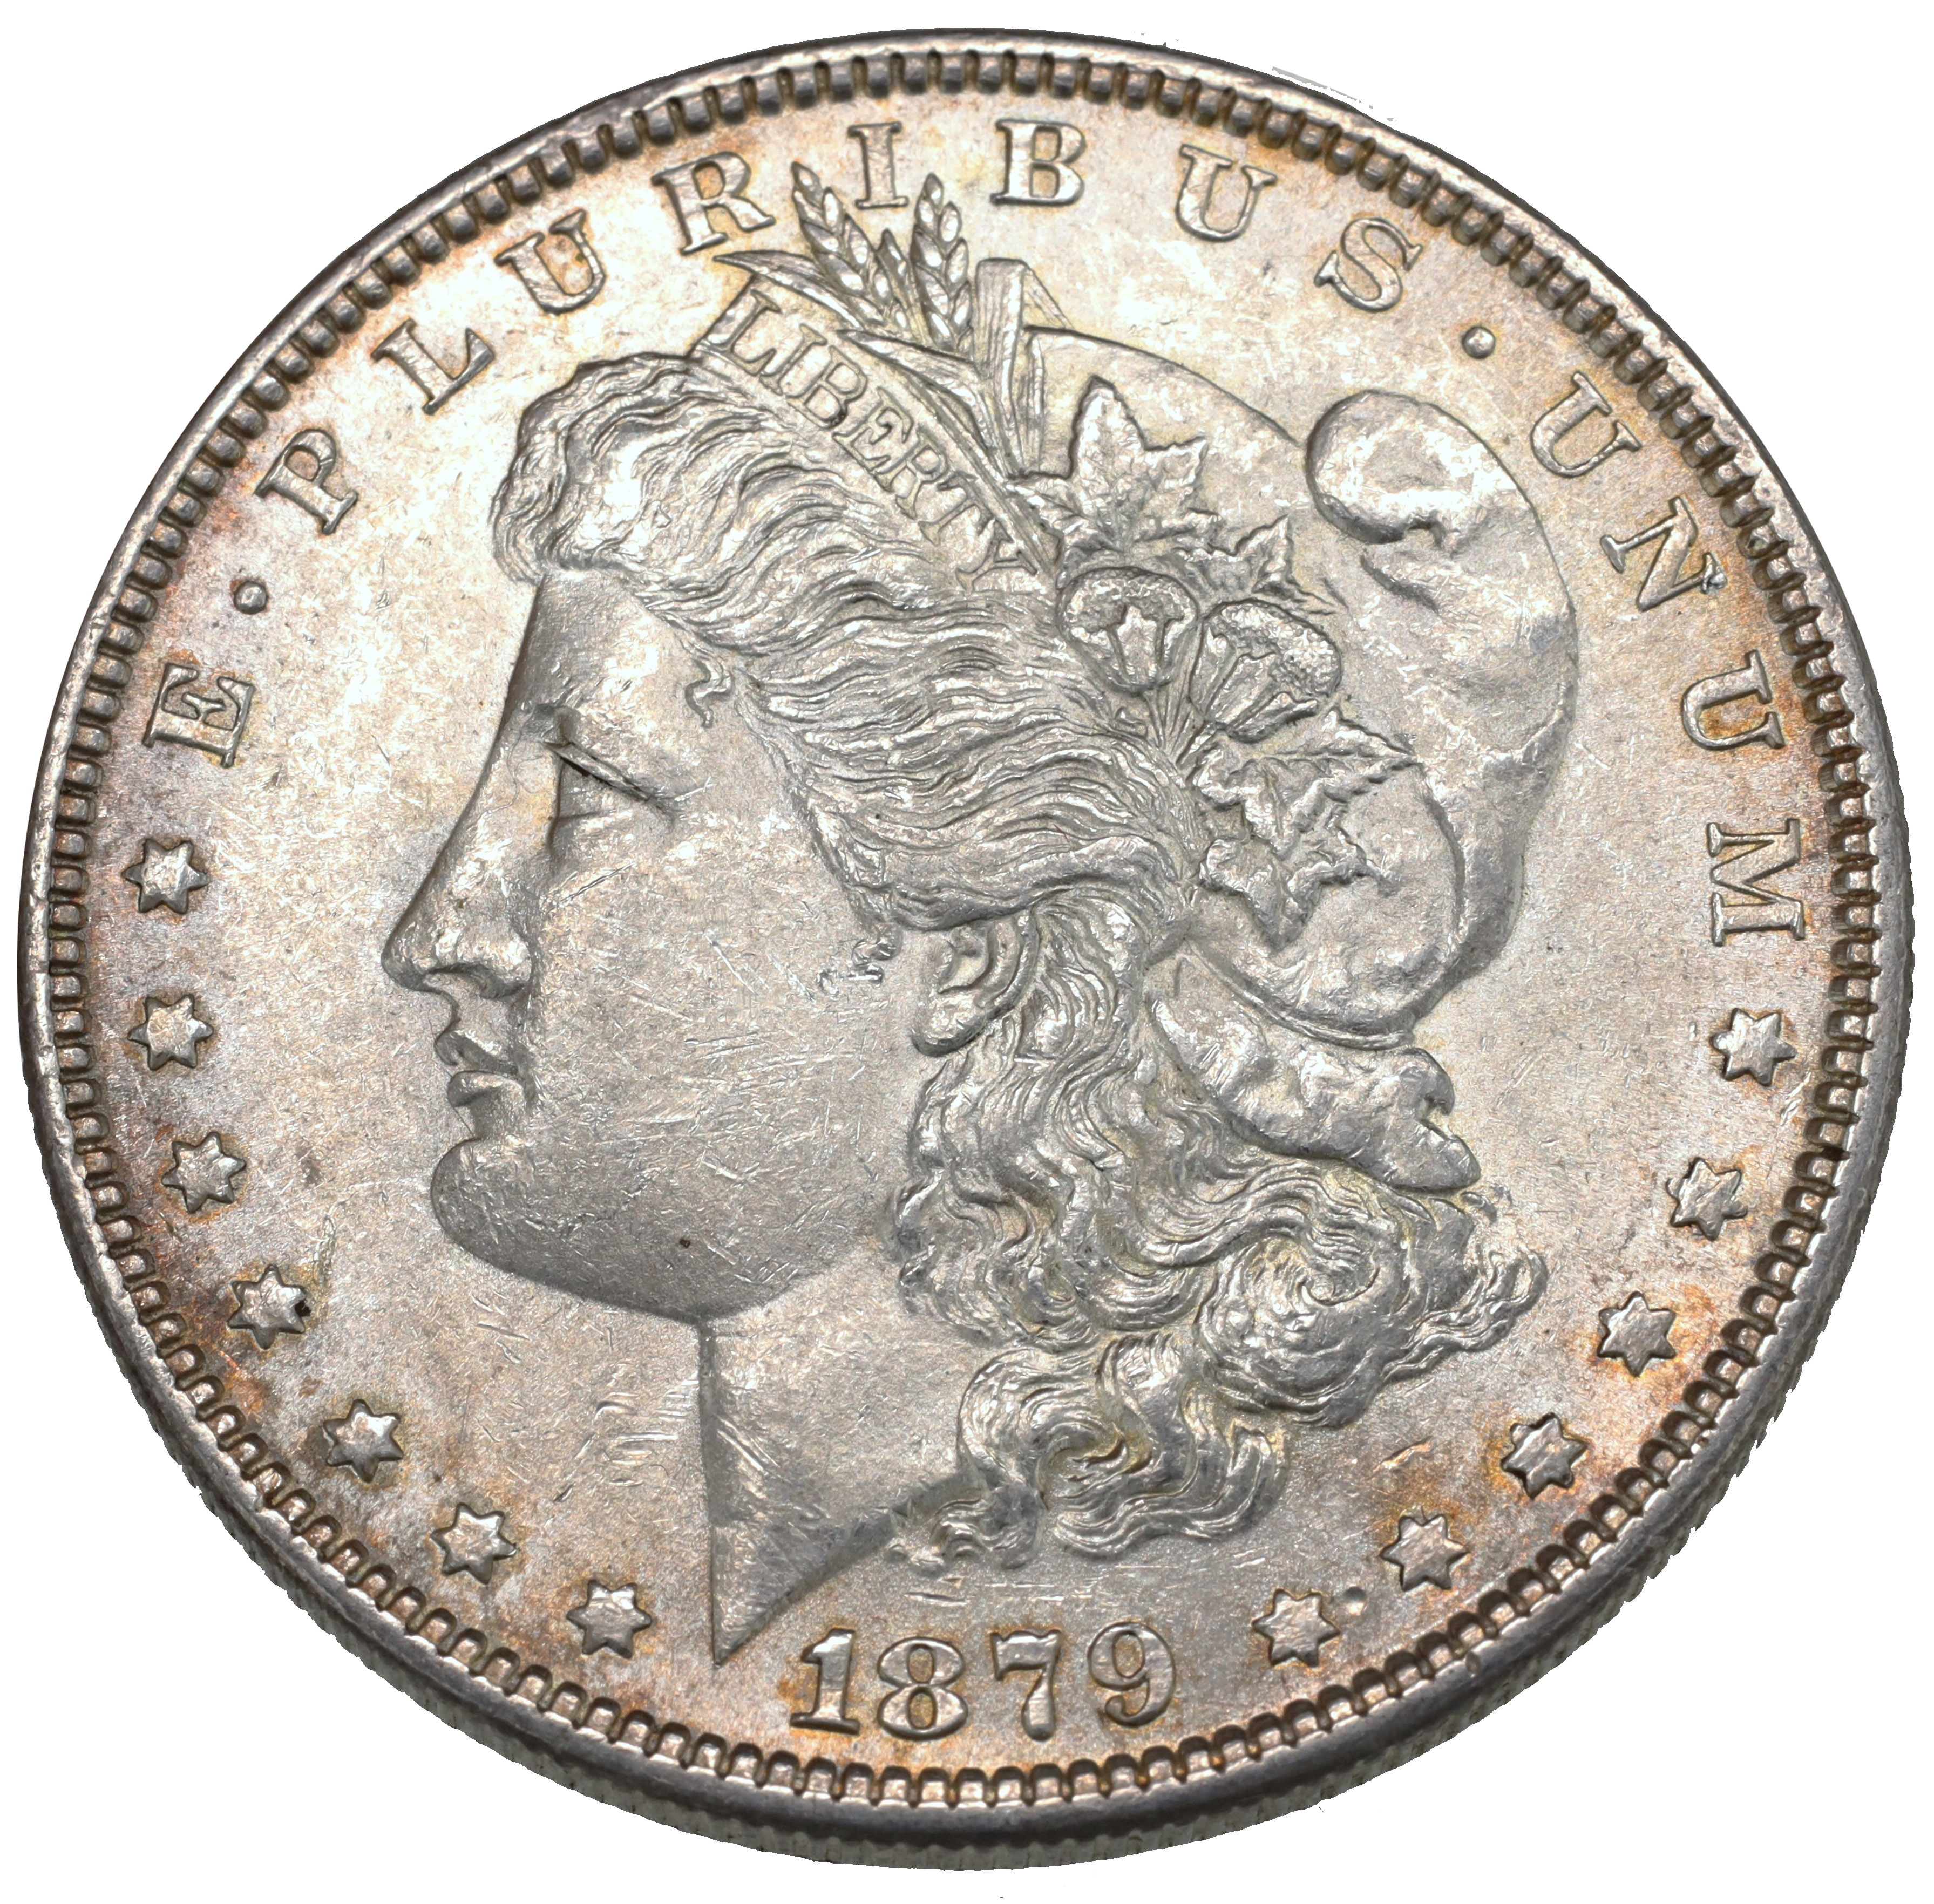 アメリカ 1879年 1ドル銀貨 モルガンダラー リバティ フィラデルフィア